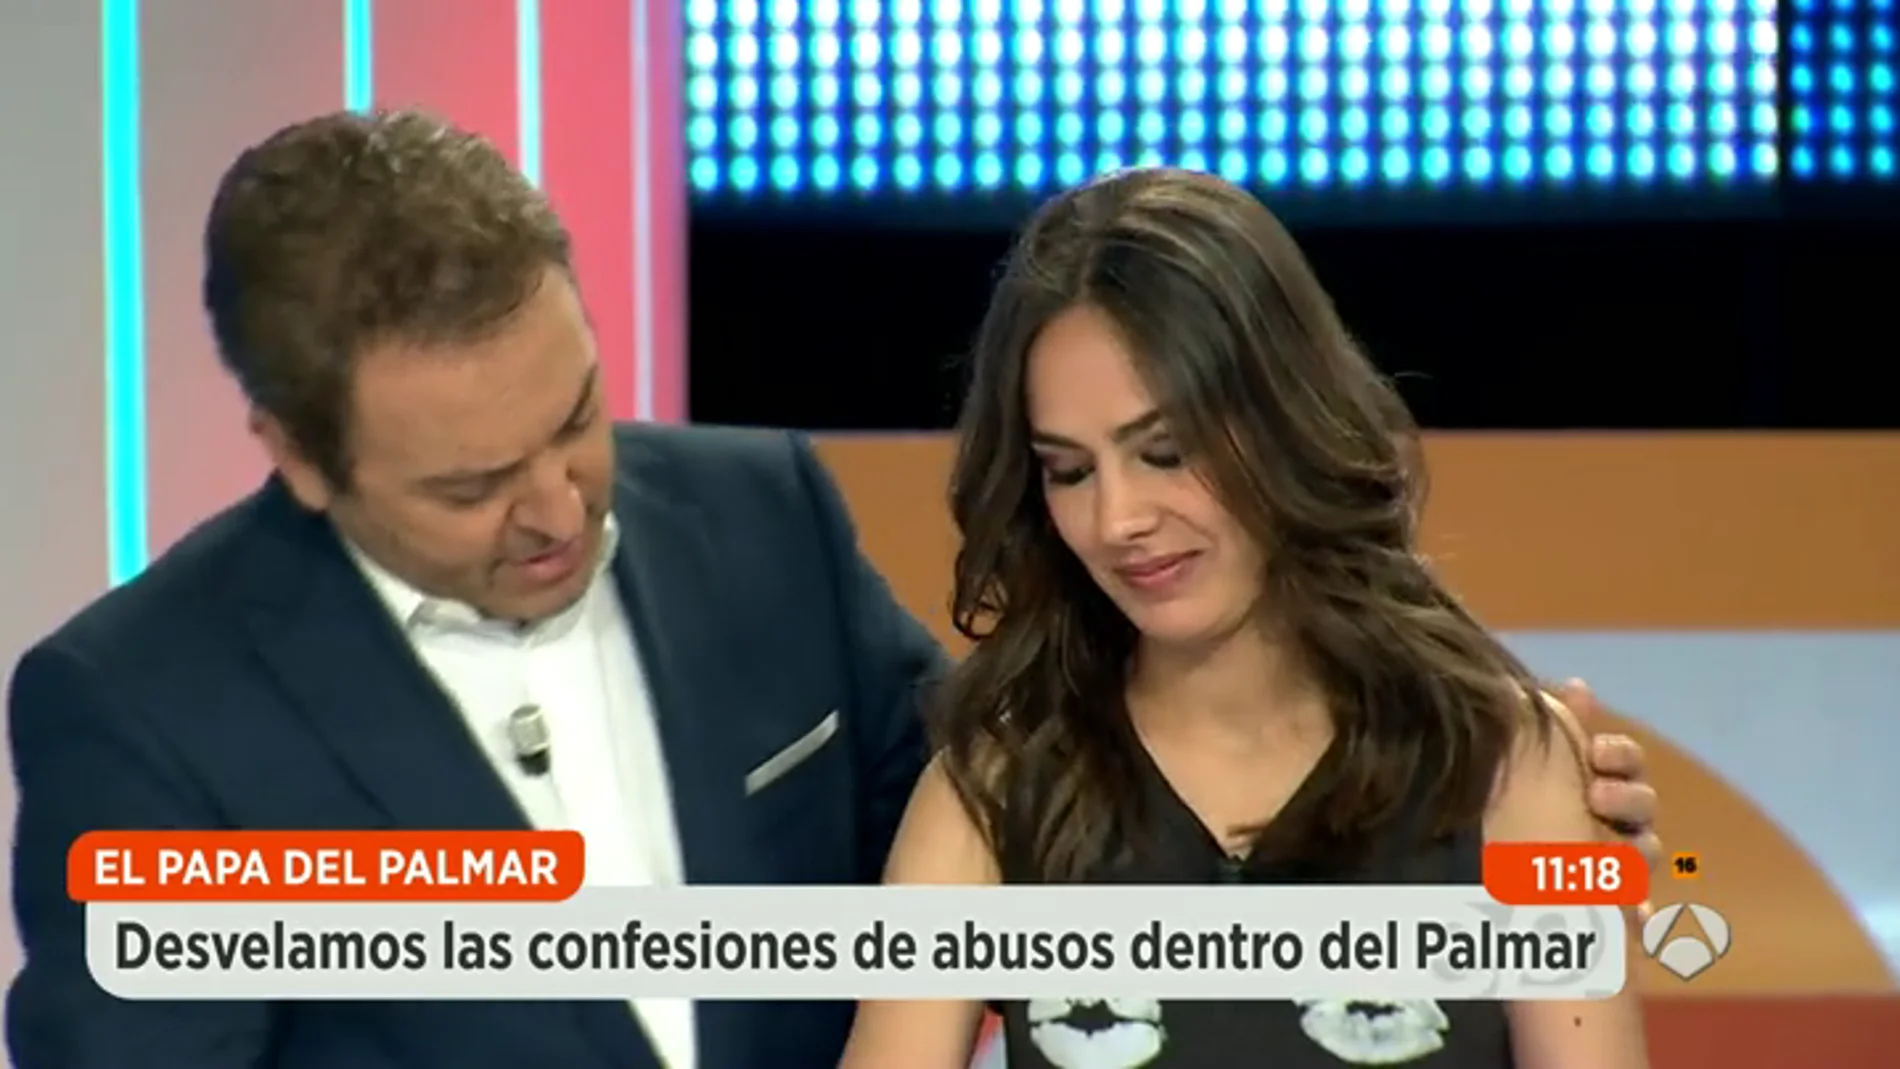 Frame 8.845625 de: María Miñana: "Me dio una bofetada que me giró la cara"